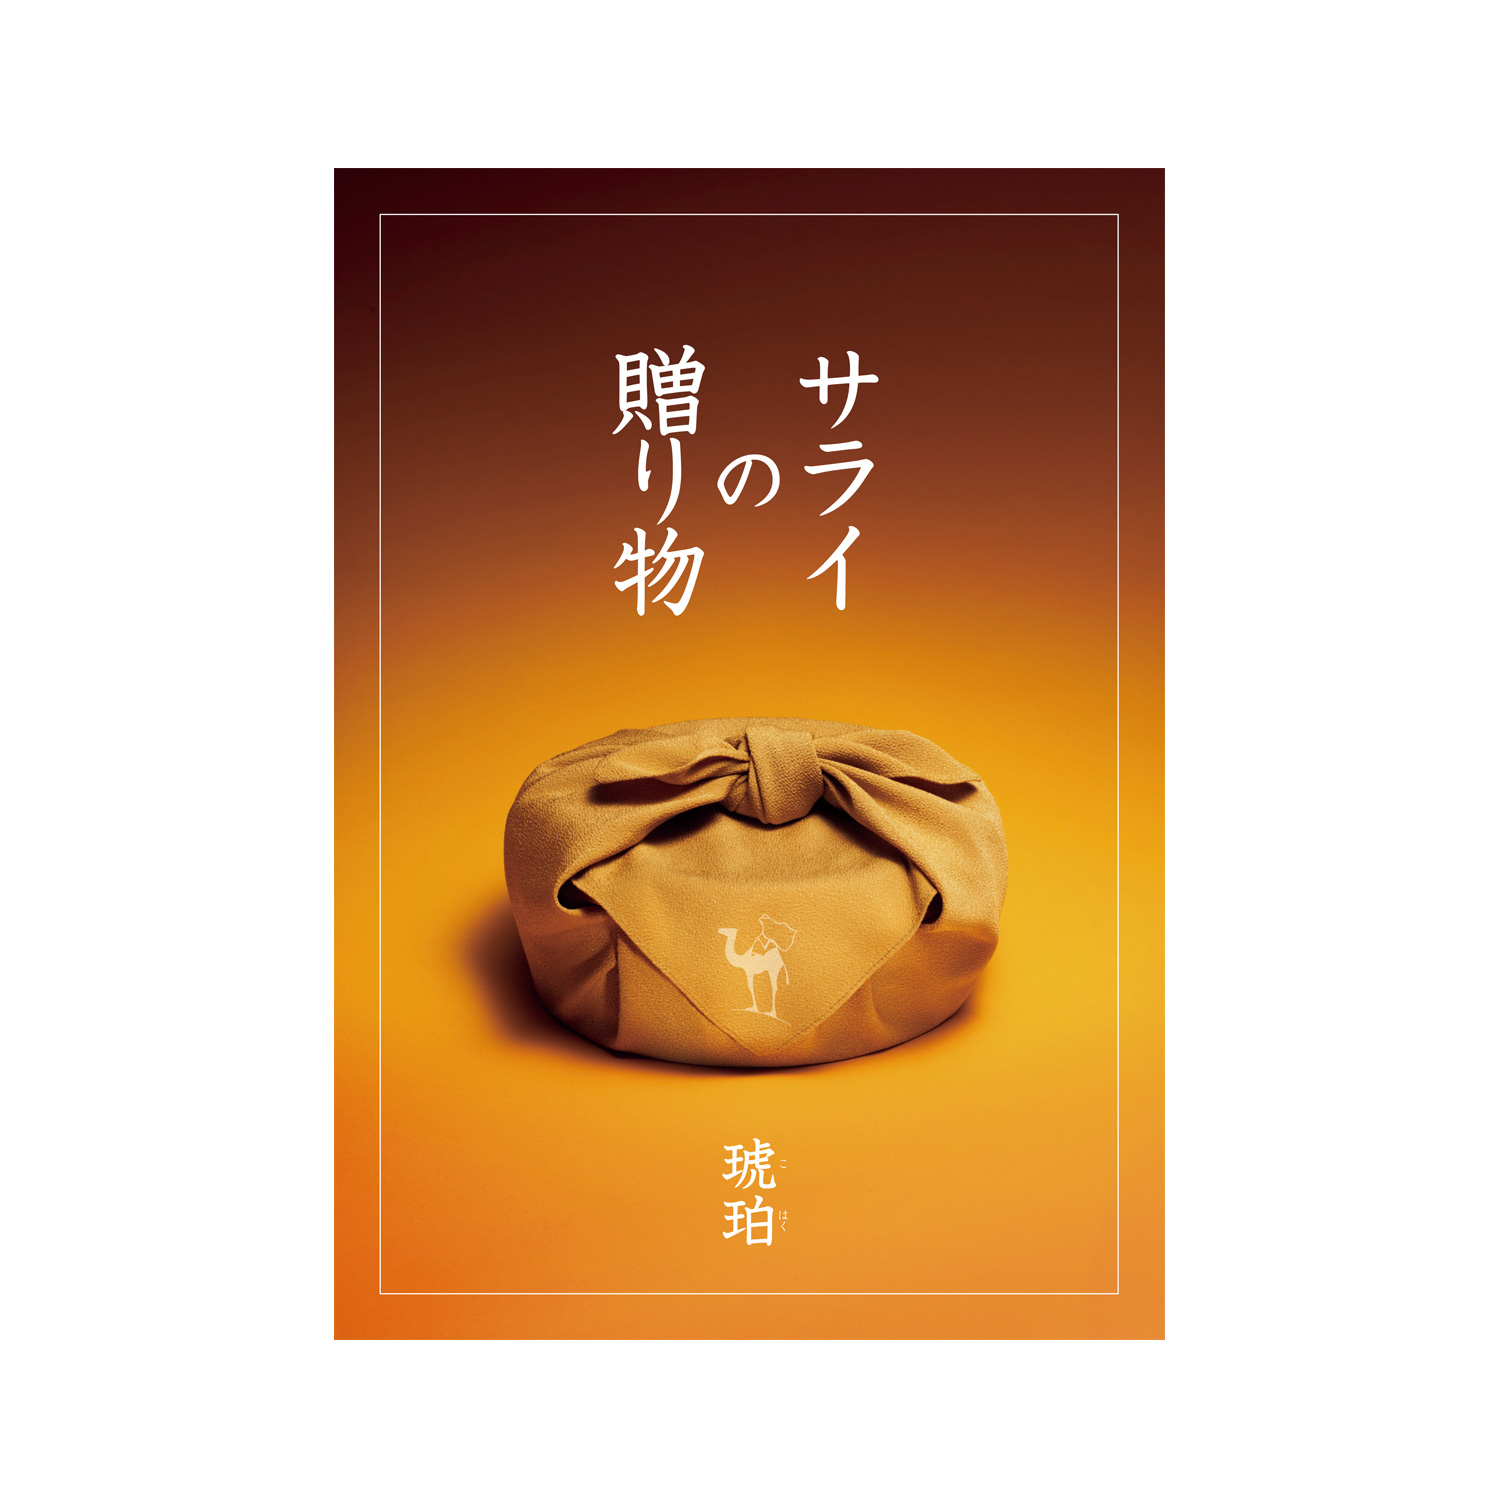 カタログギフト サライの贈り物×リンベル 琥珀(こはく) | 【TSUNAGU ...